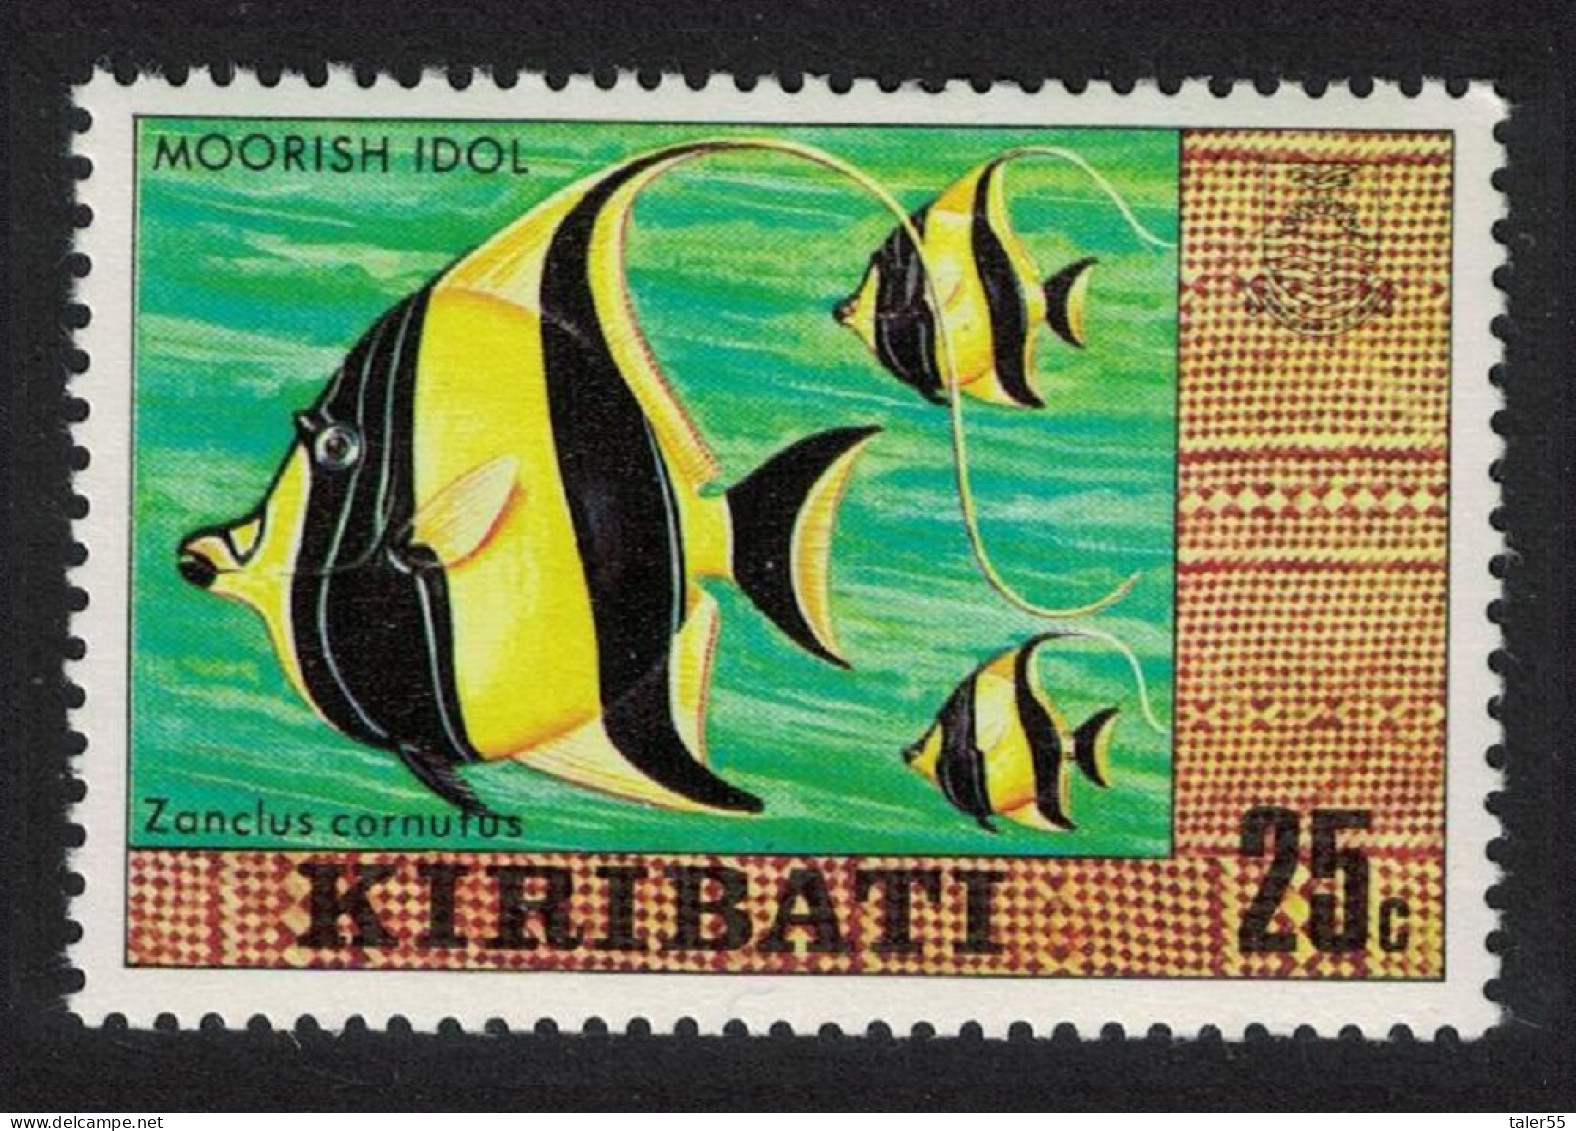 Kiribati Moorish Idol Fish 25c 1980 MNH SG#129 - Kiribati (1979-...)